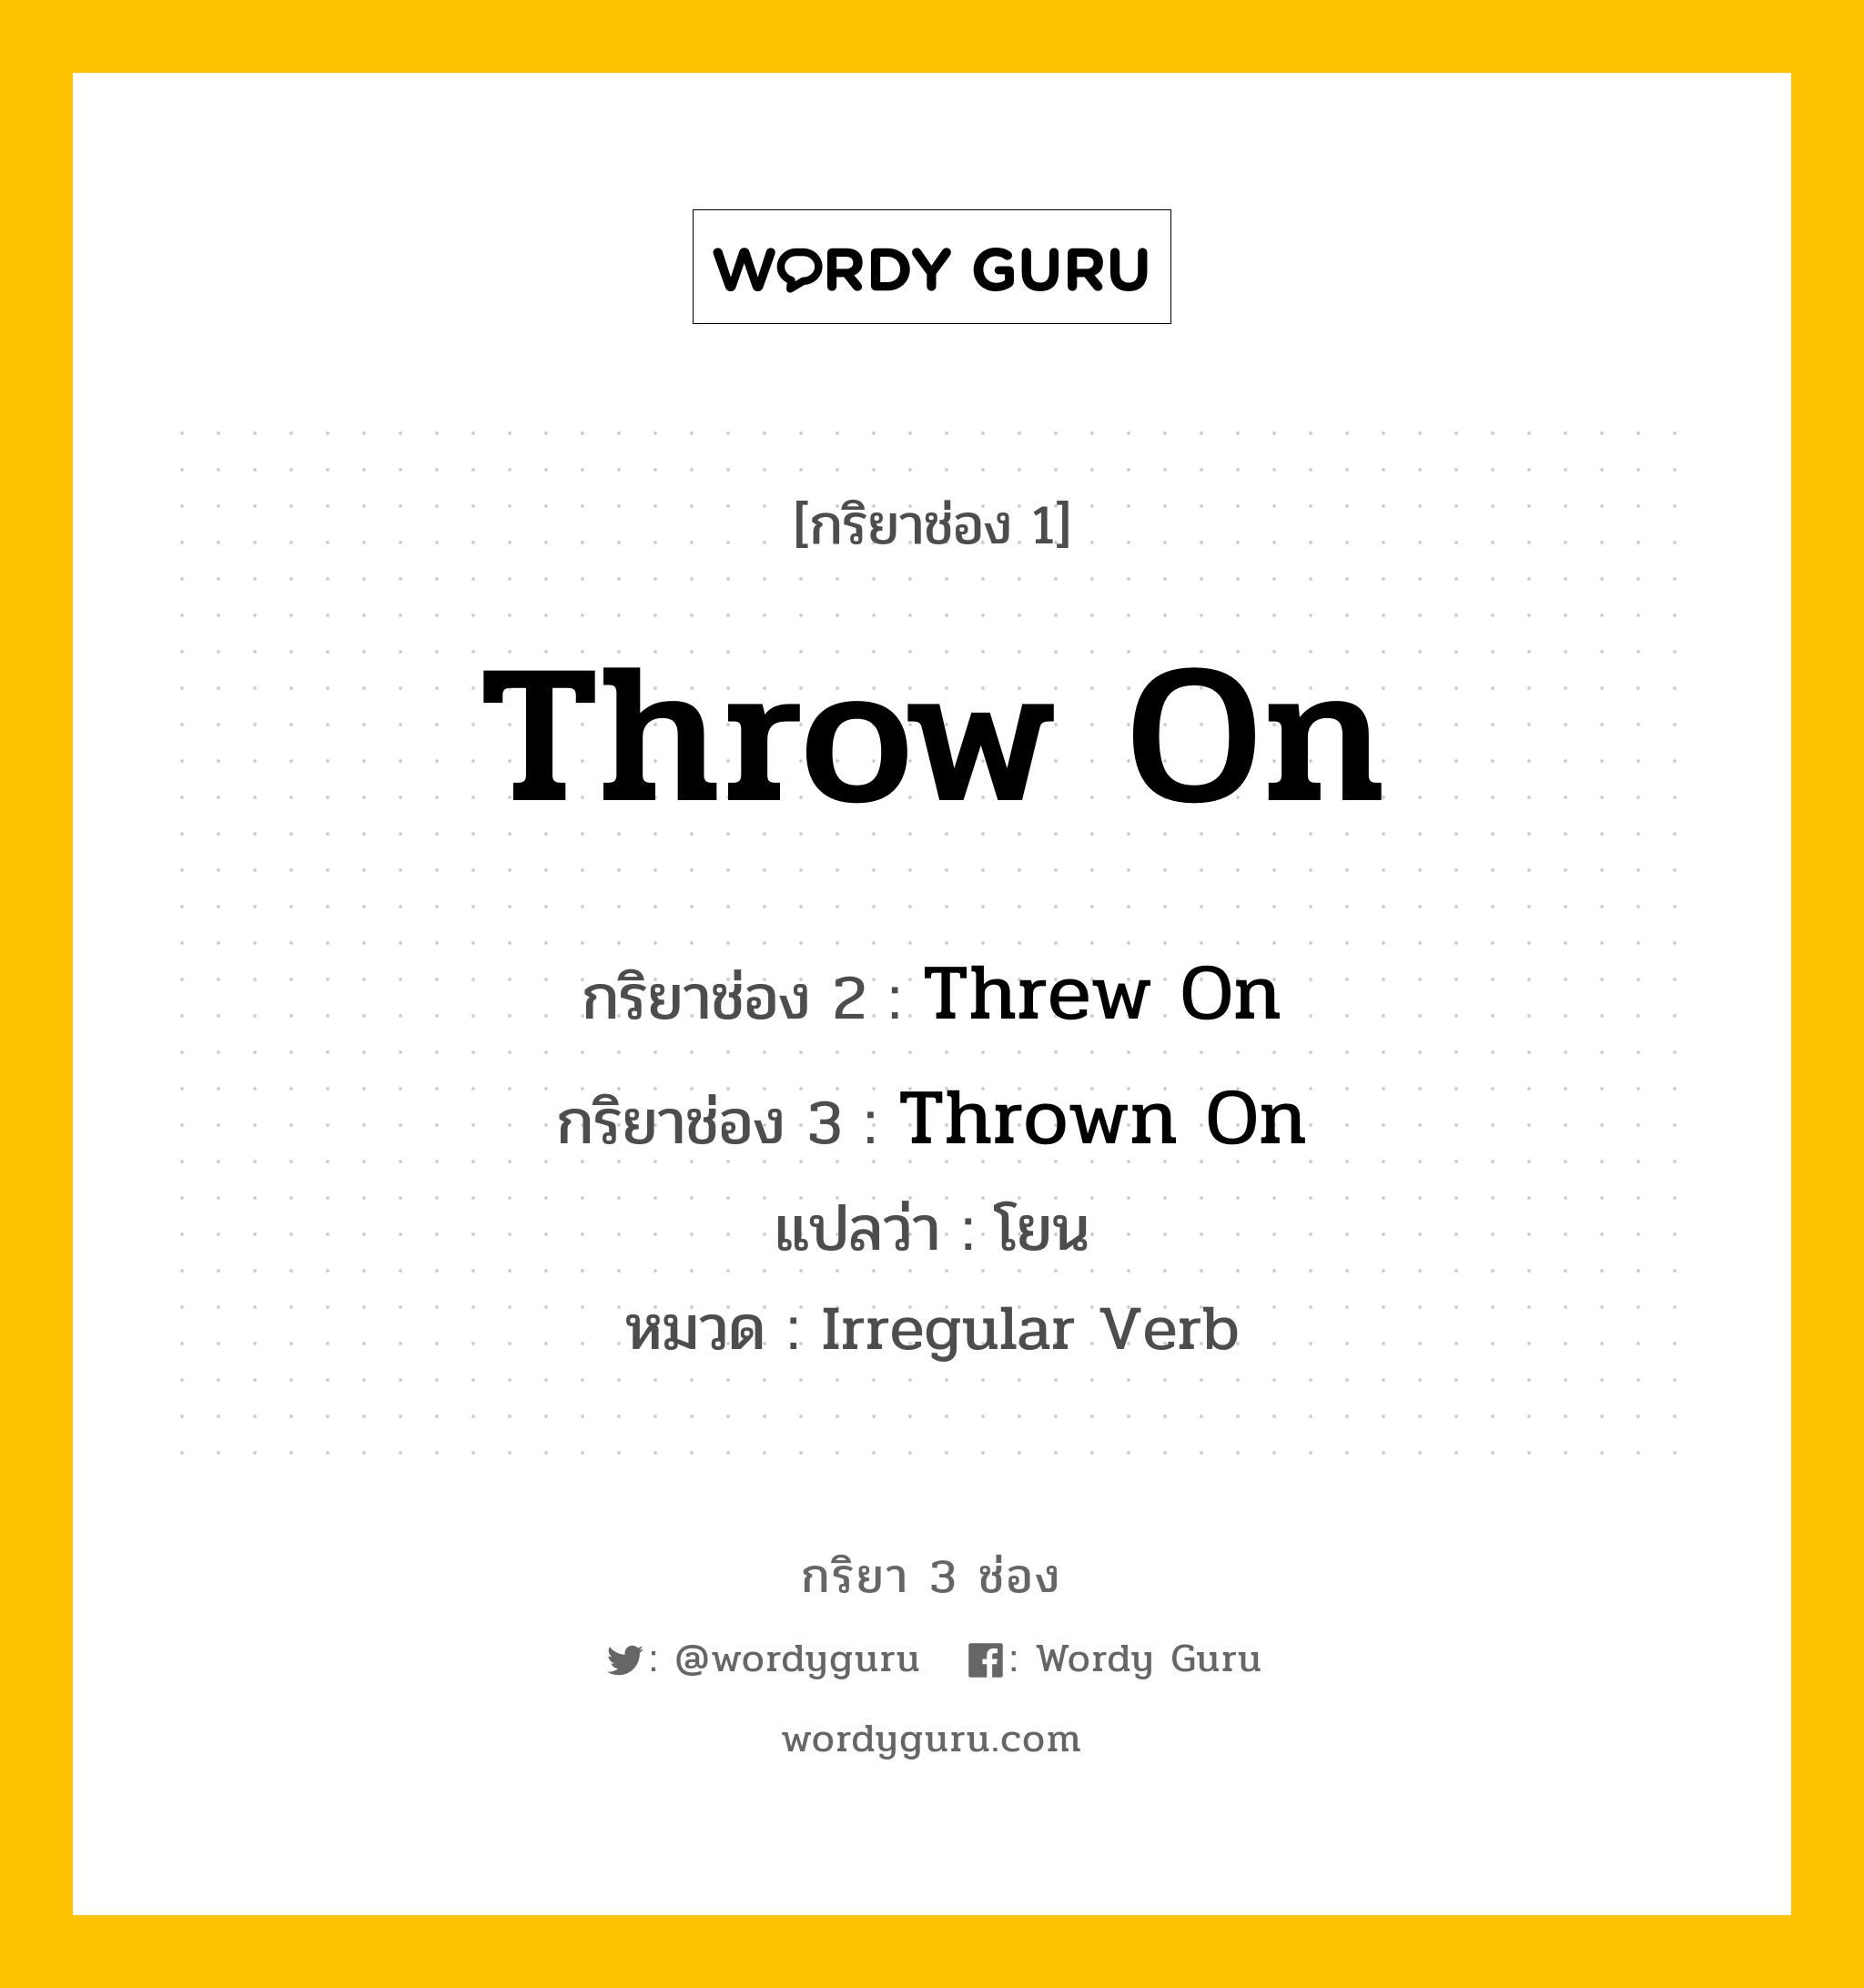 กริยา 3 ช่อง ของ Throw On คืออะไร? มาดูคำอ่าน คำแปลกันเลย, กริยาช่อง 1 Throw On กริยาช่อง 2 Threw On กริยาช่อง 3 Thrown On แปลว่า โยน หมวด Irregular Verb หมวด Irregular Verb